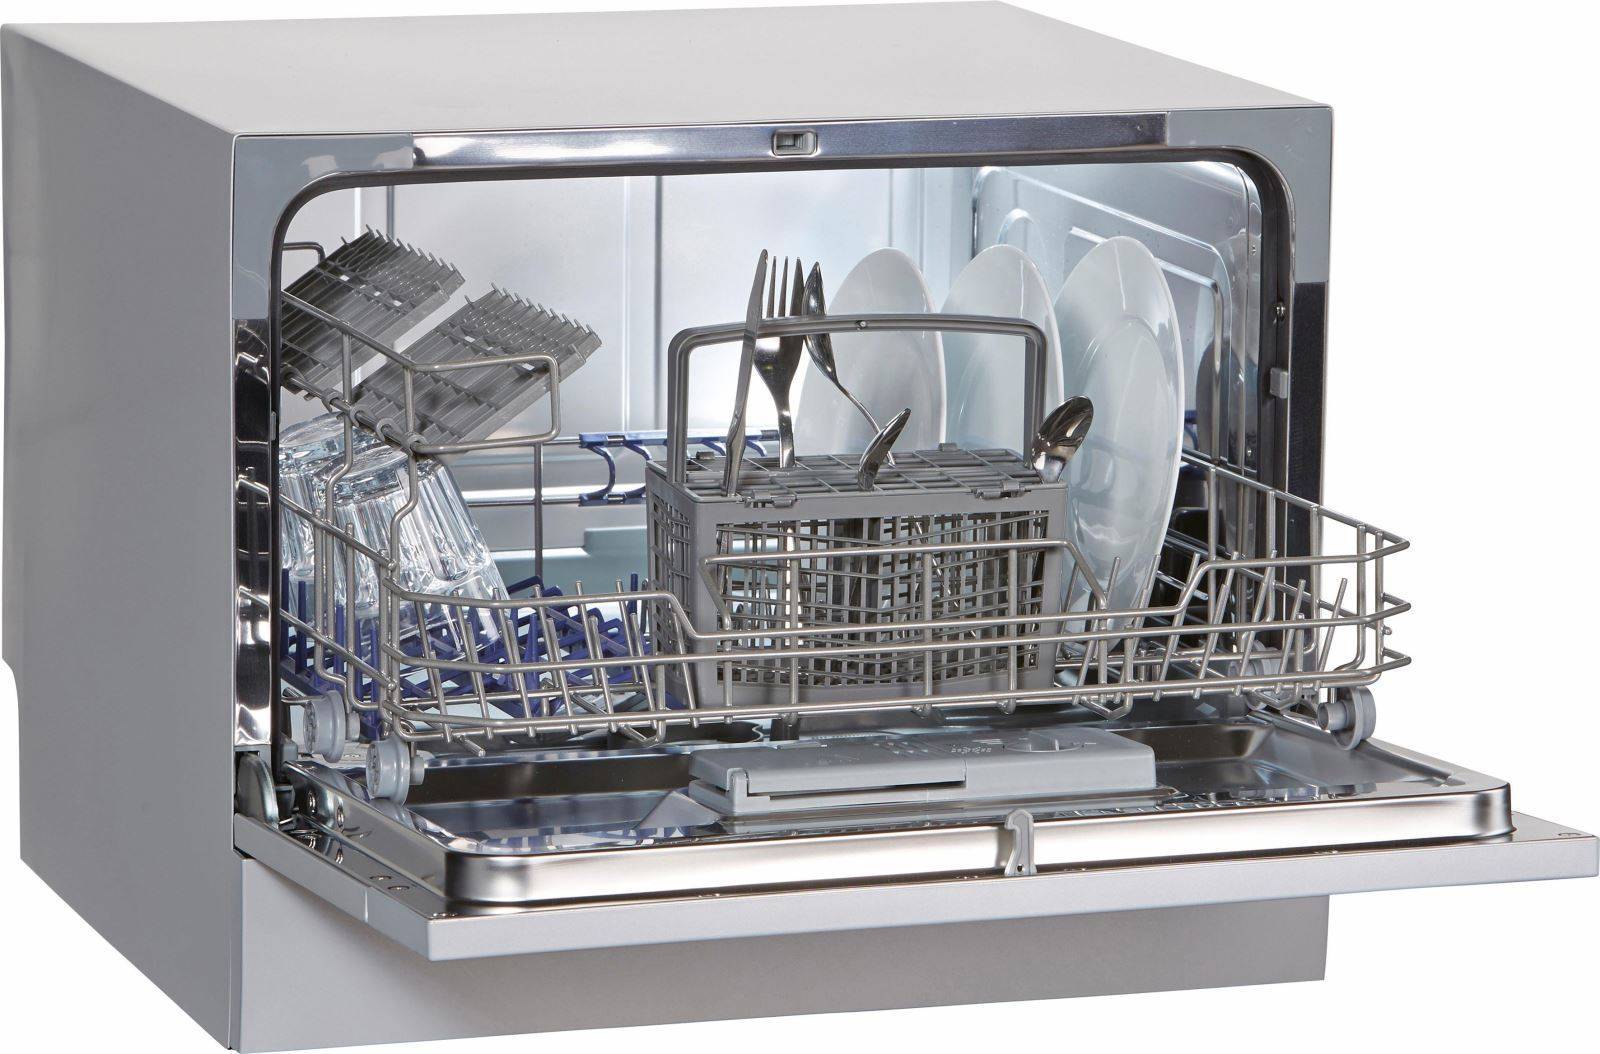 Посудомоечная машина (посудомойка). описание, виды, функции и выбор посудомоечной машины | техника на "добро есть!"